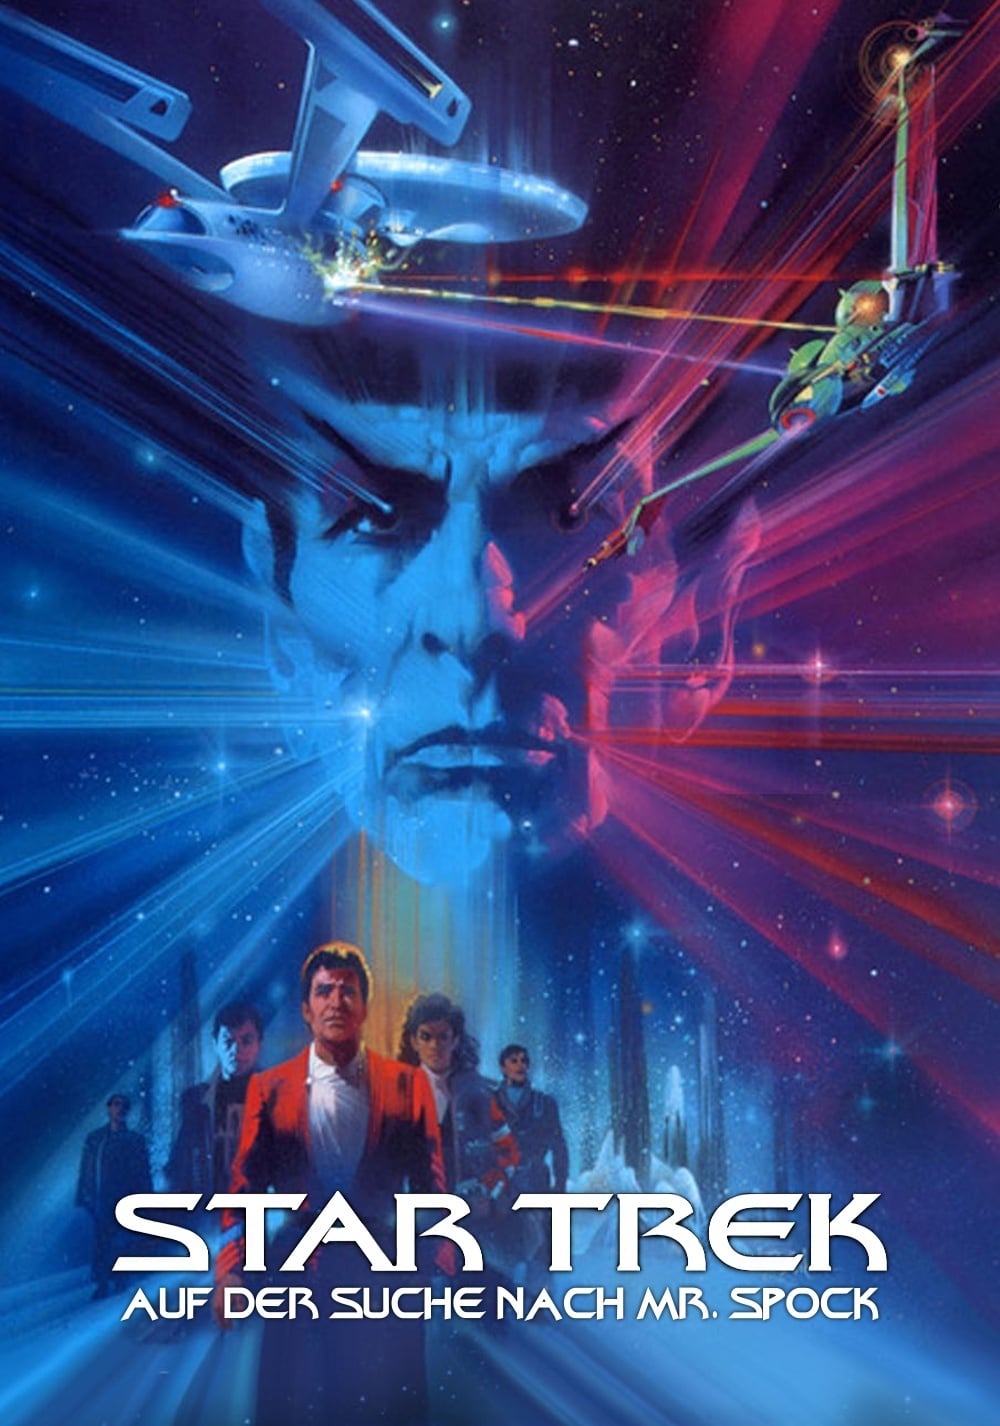 star-trek-iii-auf-der-suche-nach-mr-spock-film-1984-05-31